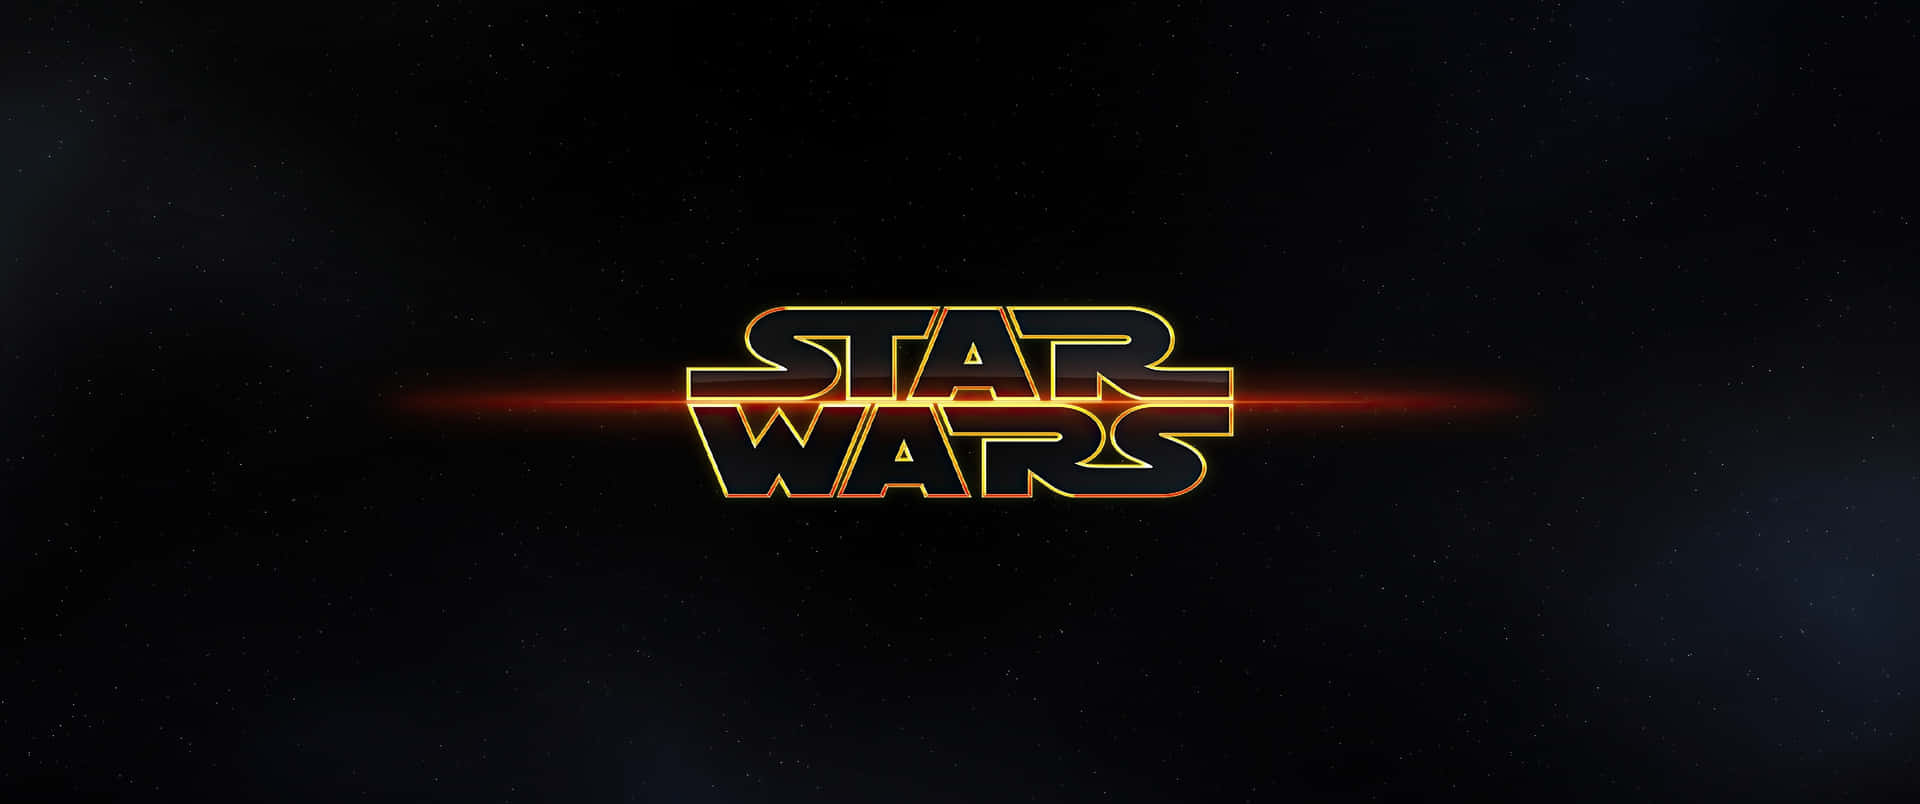 Star Wars Logo Ultra Wide Wallpaper